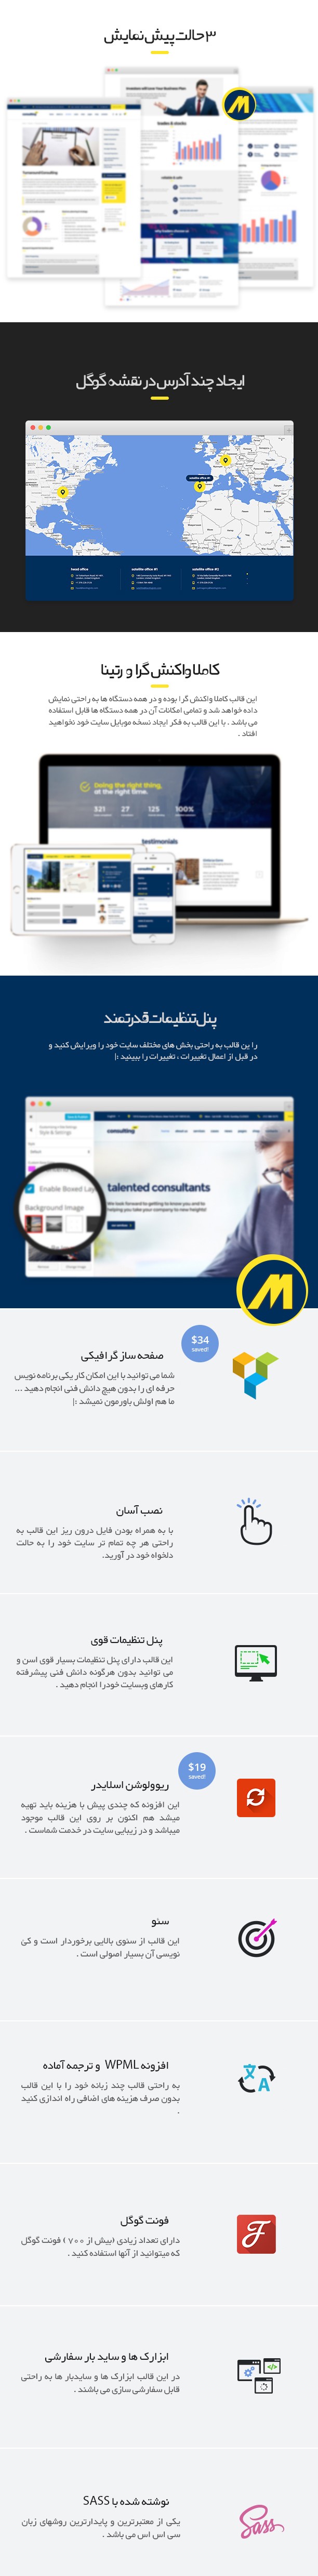 فارسی وردپرس شرکتی Consulting